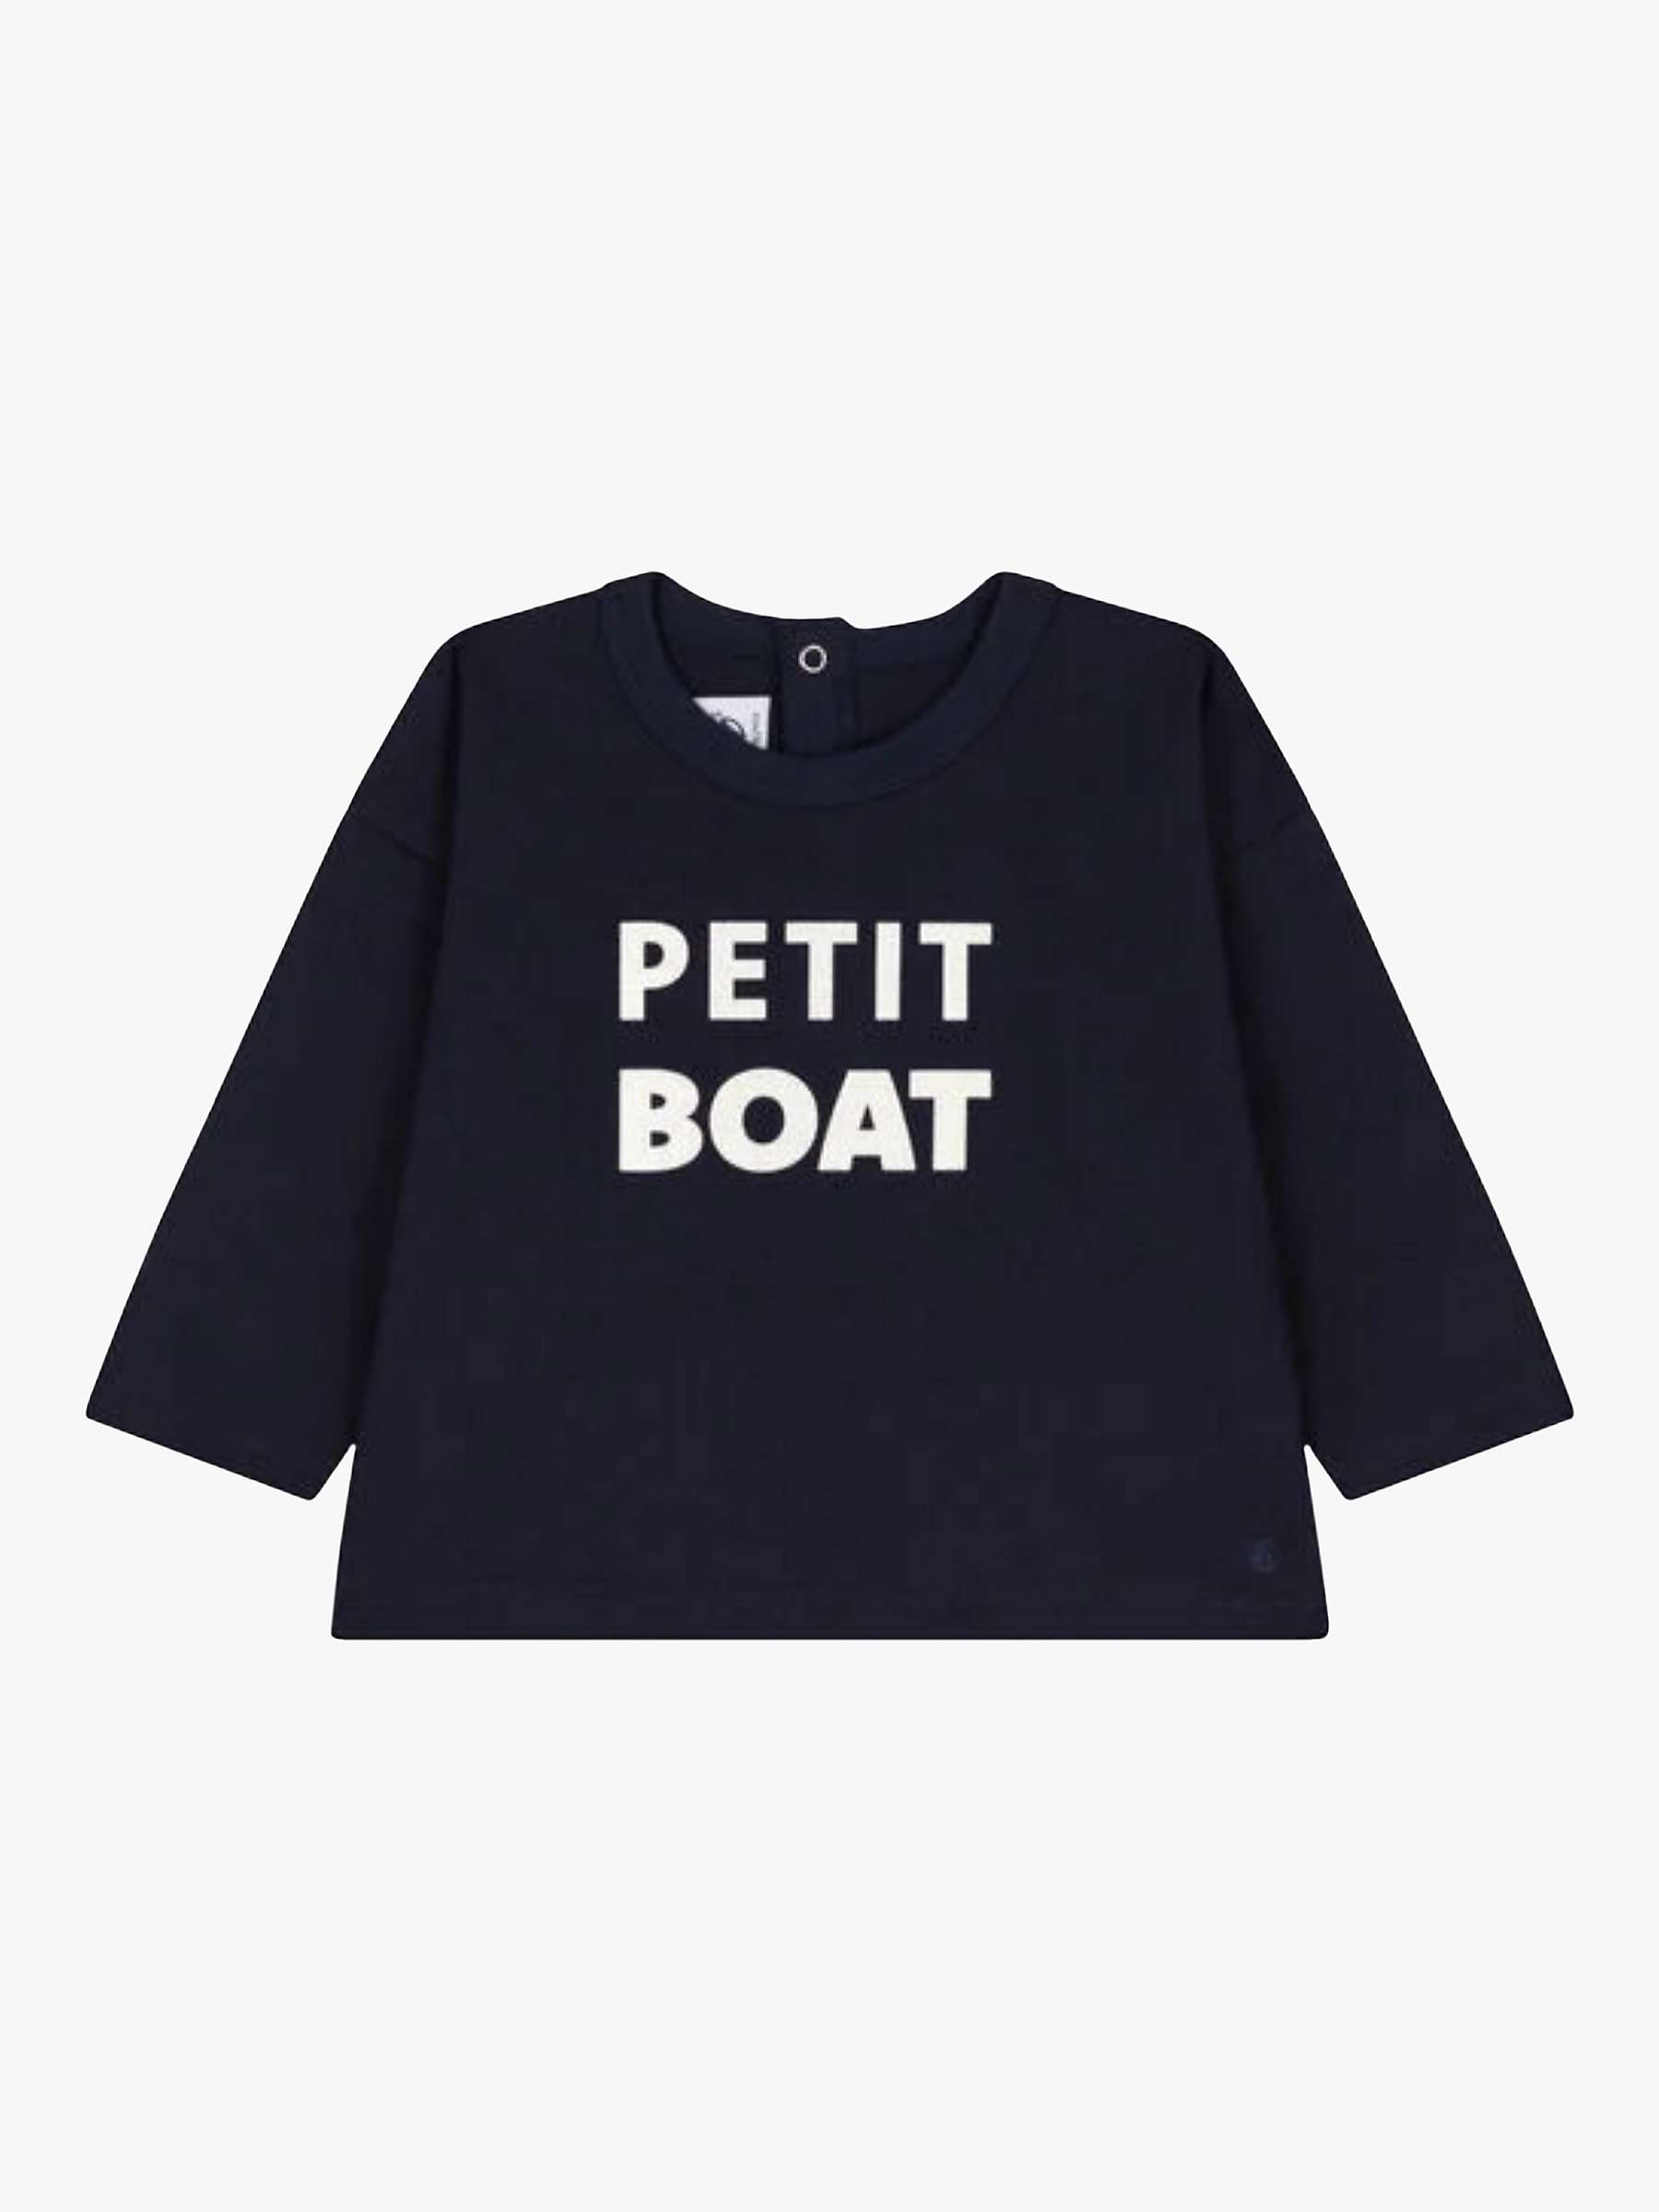 Buy Petit Bateau Baby Jersey T-Shirt, Smoking Online at johnlewis.com